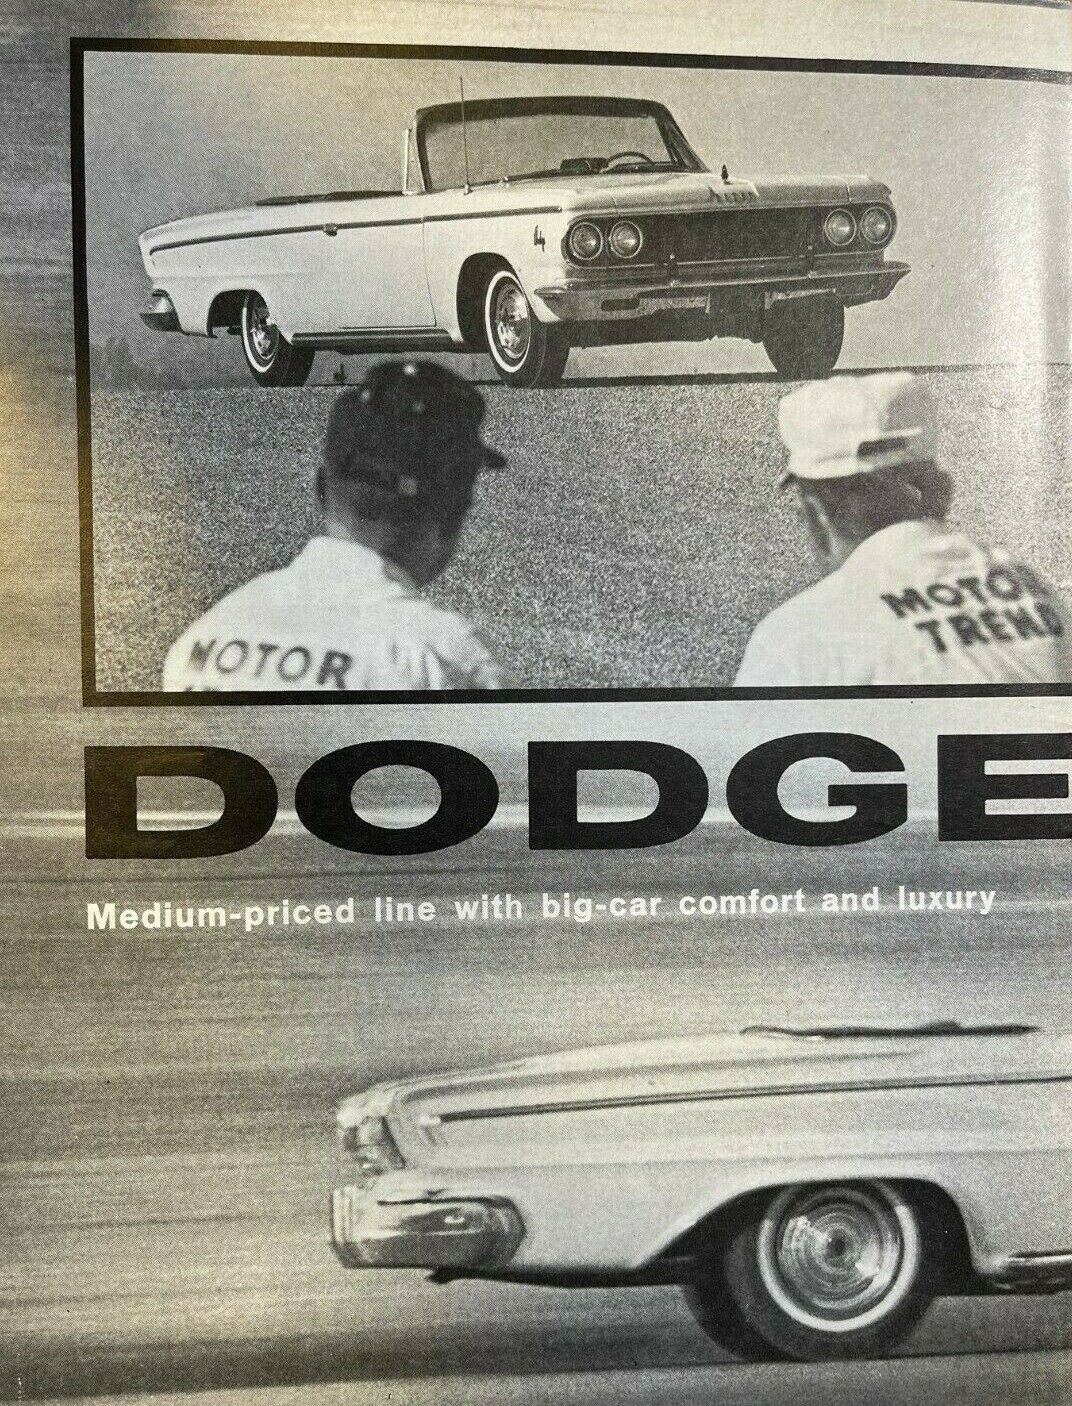 1963 Road Test Dodge Custom 880 illustrated